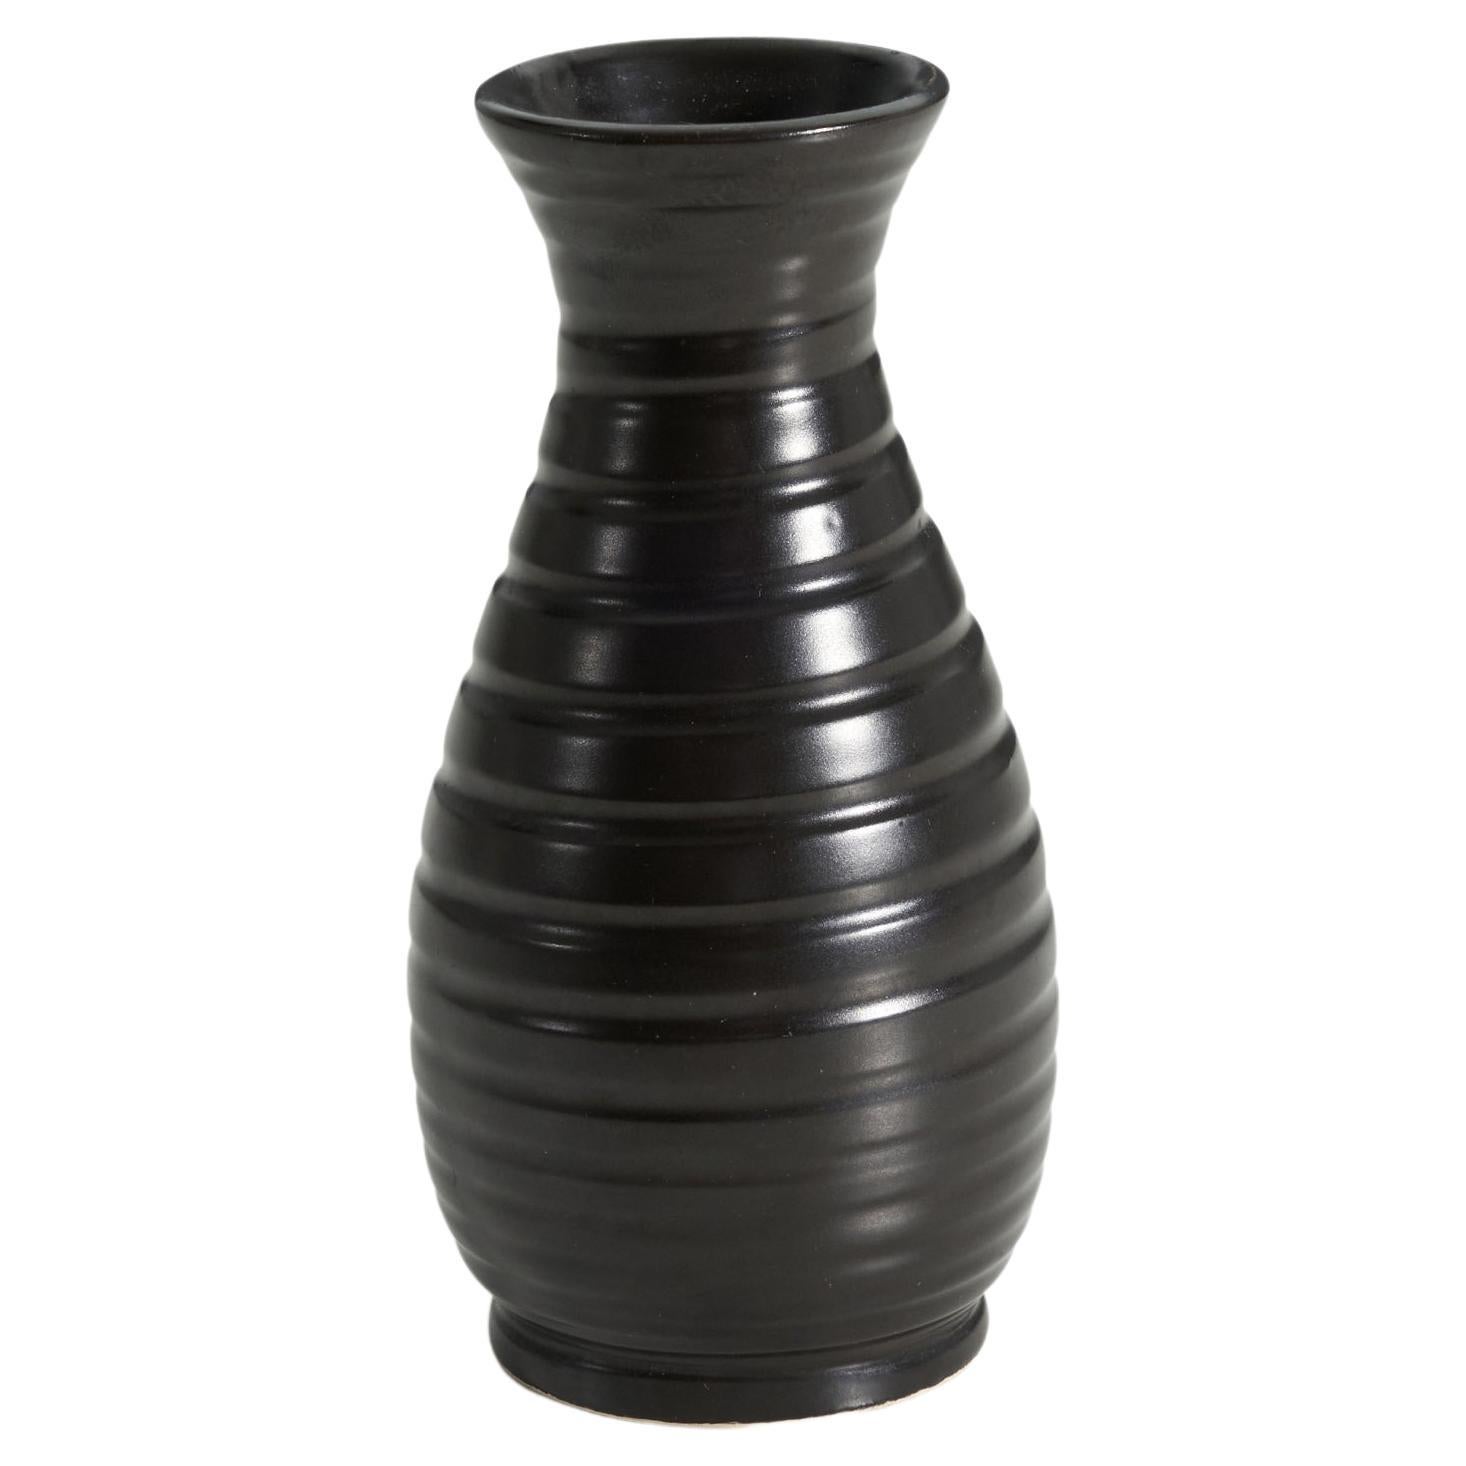 Vase aus schwarz glasiertem Steingut, hergestellt von Bo Fajans, Schweden, ca. 1940er Jahre. Auf dem Sockel markiert. 

.